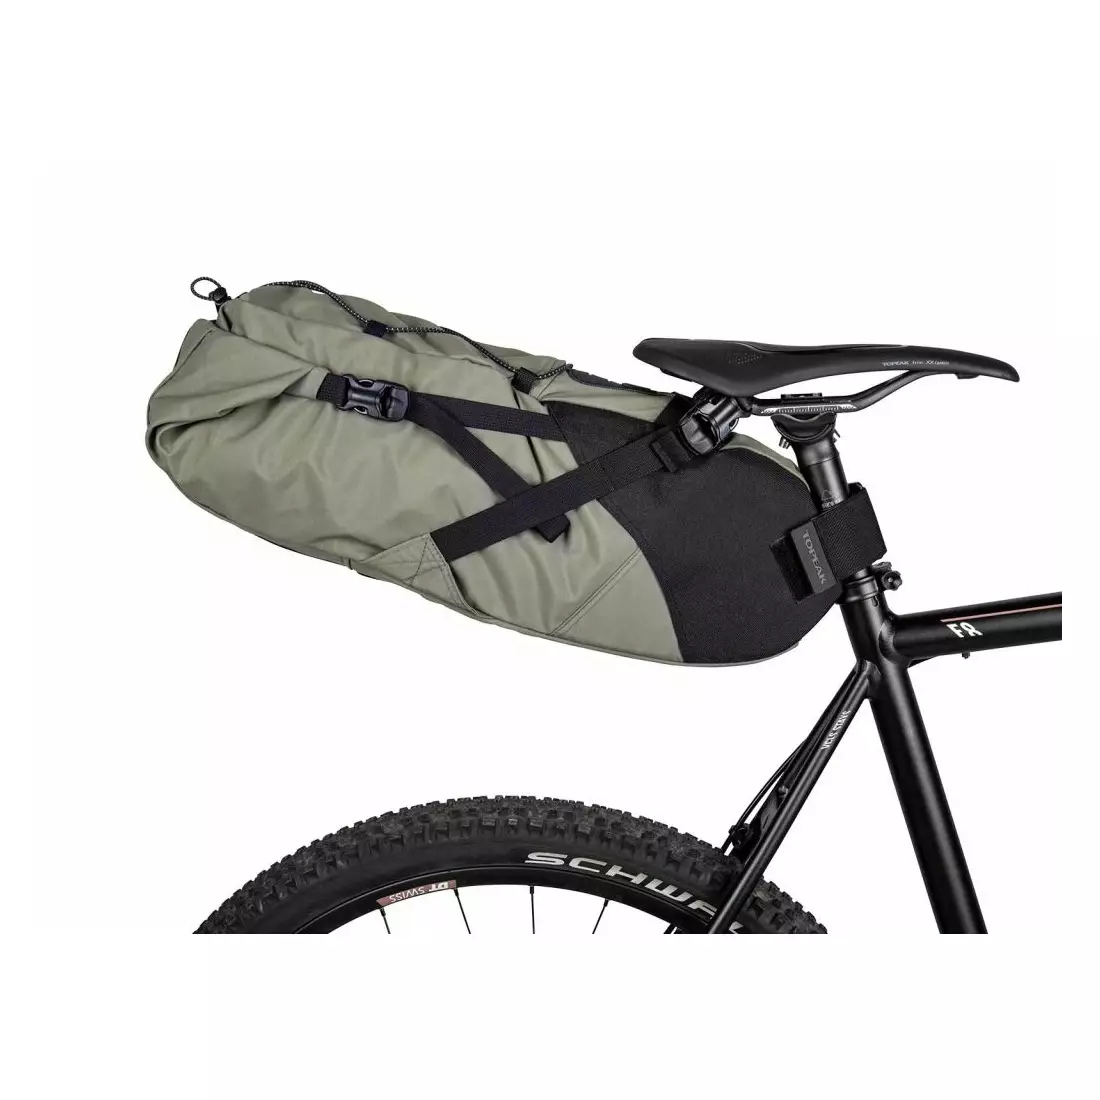 Topeak MidLoader Frame Mount Bikepacking Bag 3.0 Liter - Olive Green -  TBP-ML4G | eBay